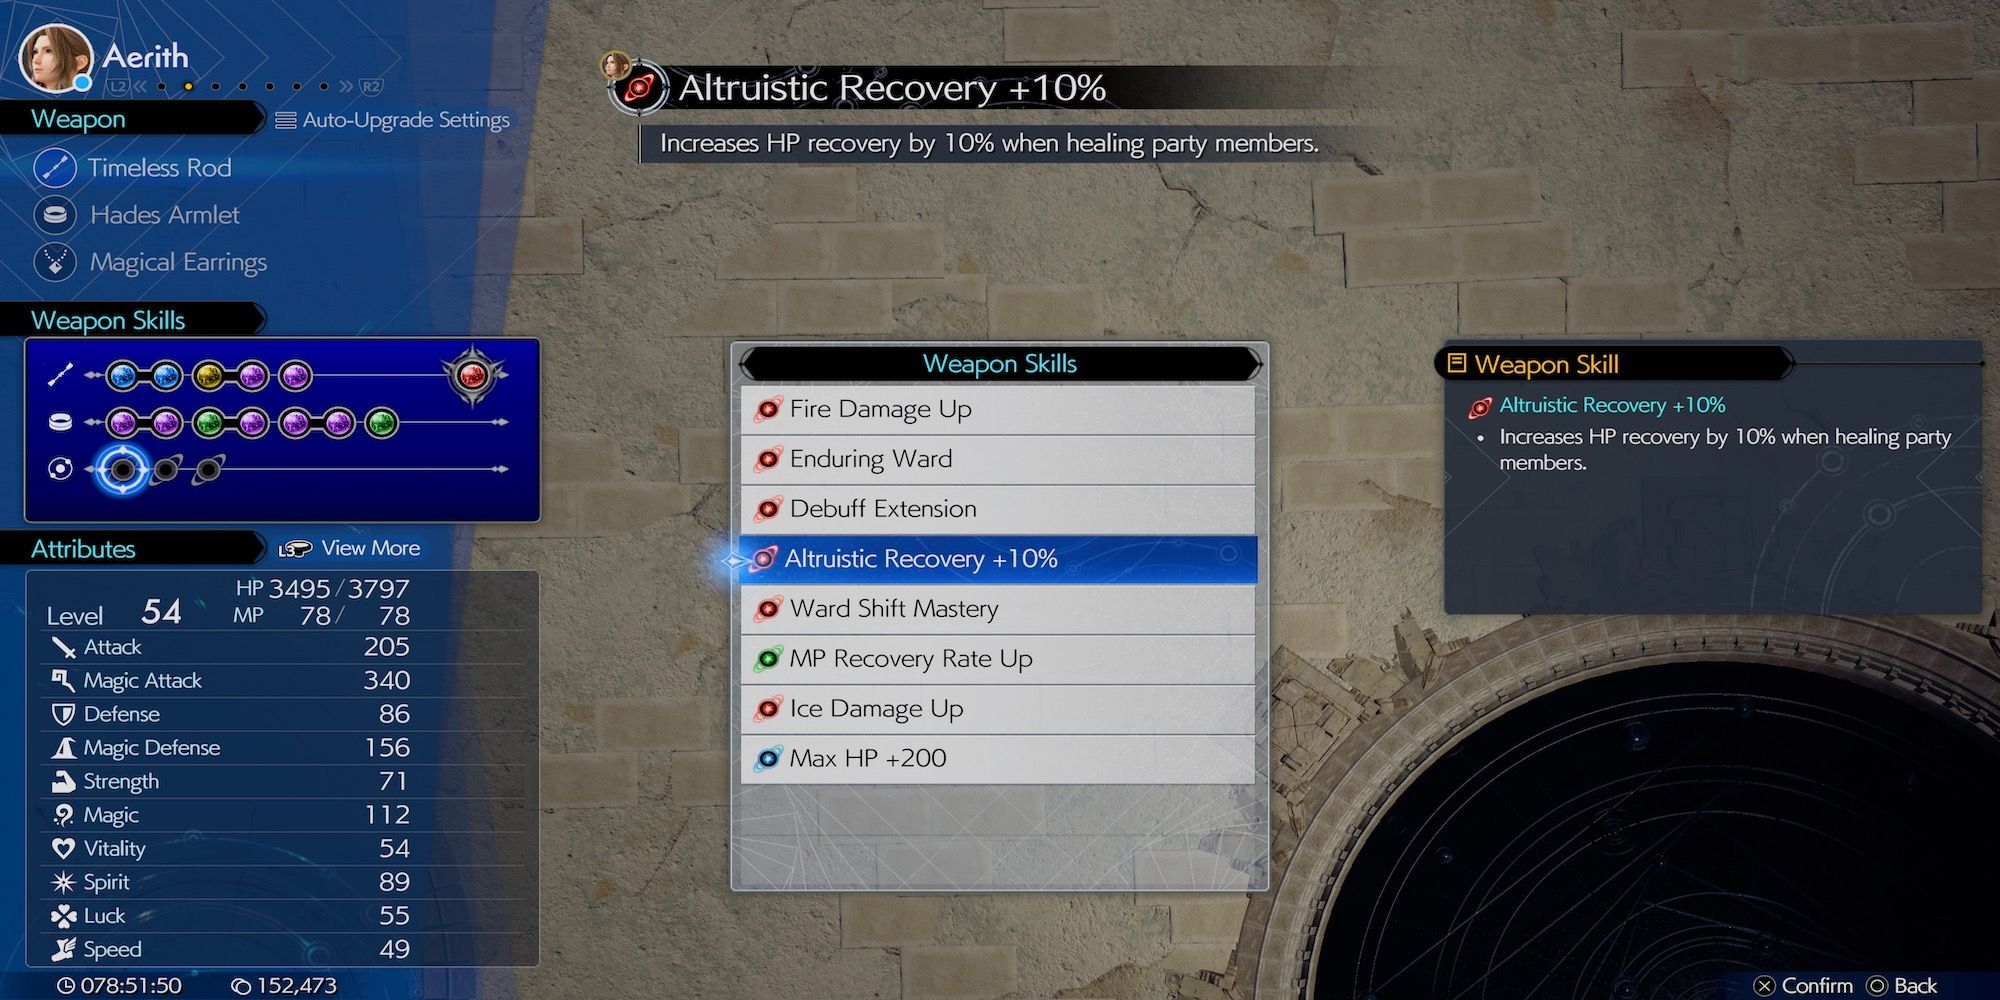 Altruistic Recovery +10% Aerith weapon skill in Final Fantasy 7 Rebirth